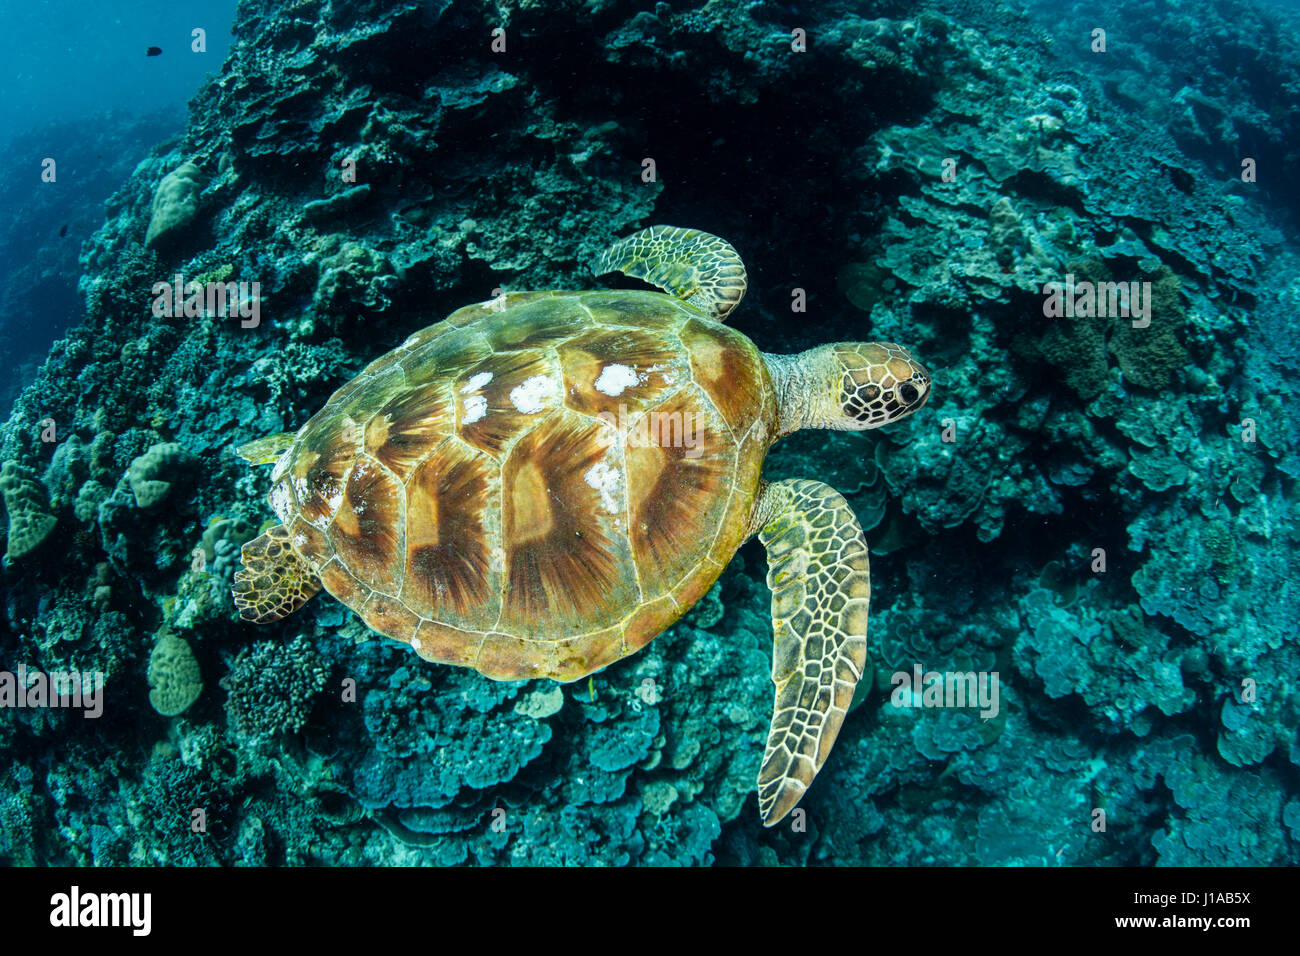 Eine grüne Meeresschildkröte schwimmt entlang dem Barrier Reef in der Republik Palau. Dieses tropische Land ist ein beliebtes Ziel für Taucher und Schnorchler. Stockfoto